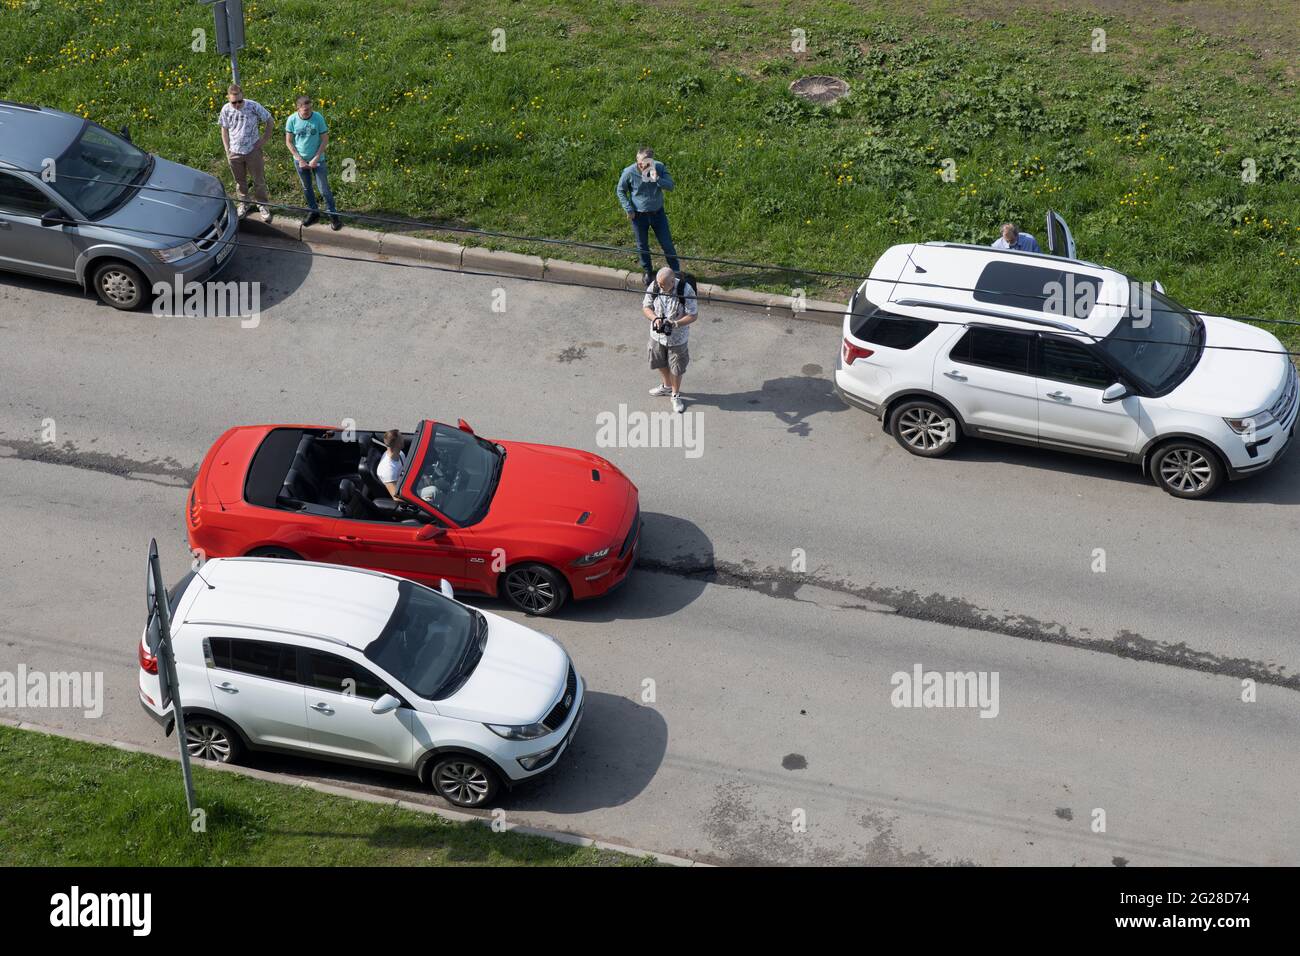 San Pietroburgo, Russia - 18 maggio 2021: Il videografo ha una vista laterale del driver nella vettura rossa ' Ford Mustang' vista dall'alto Foto Stock